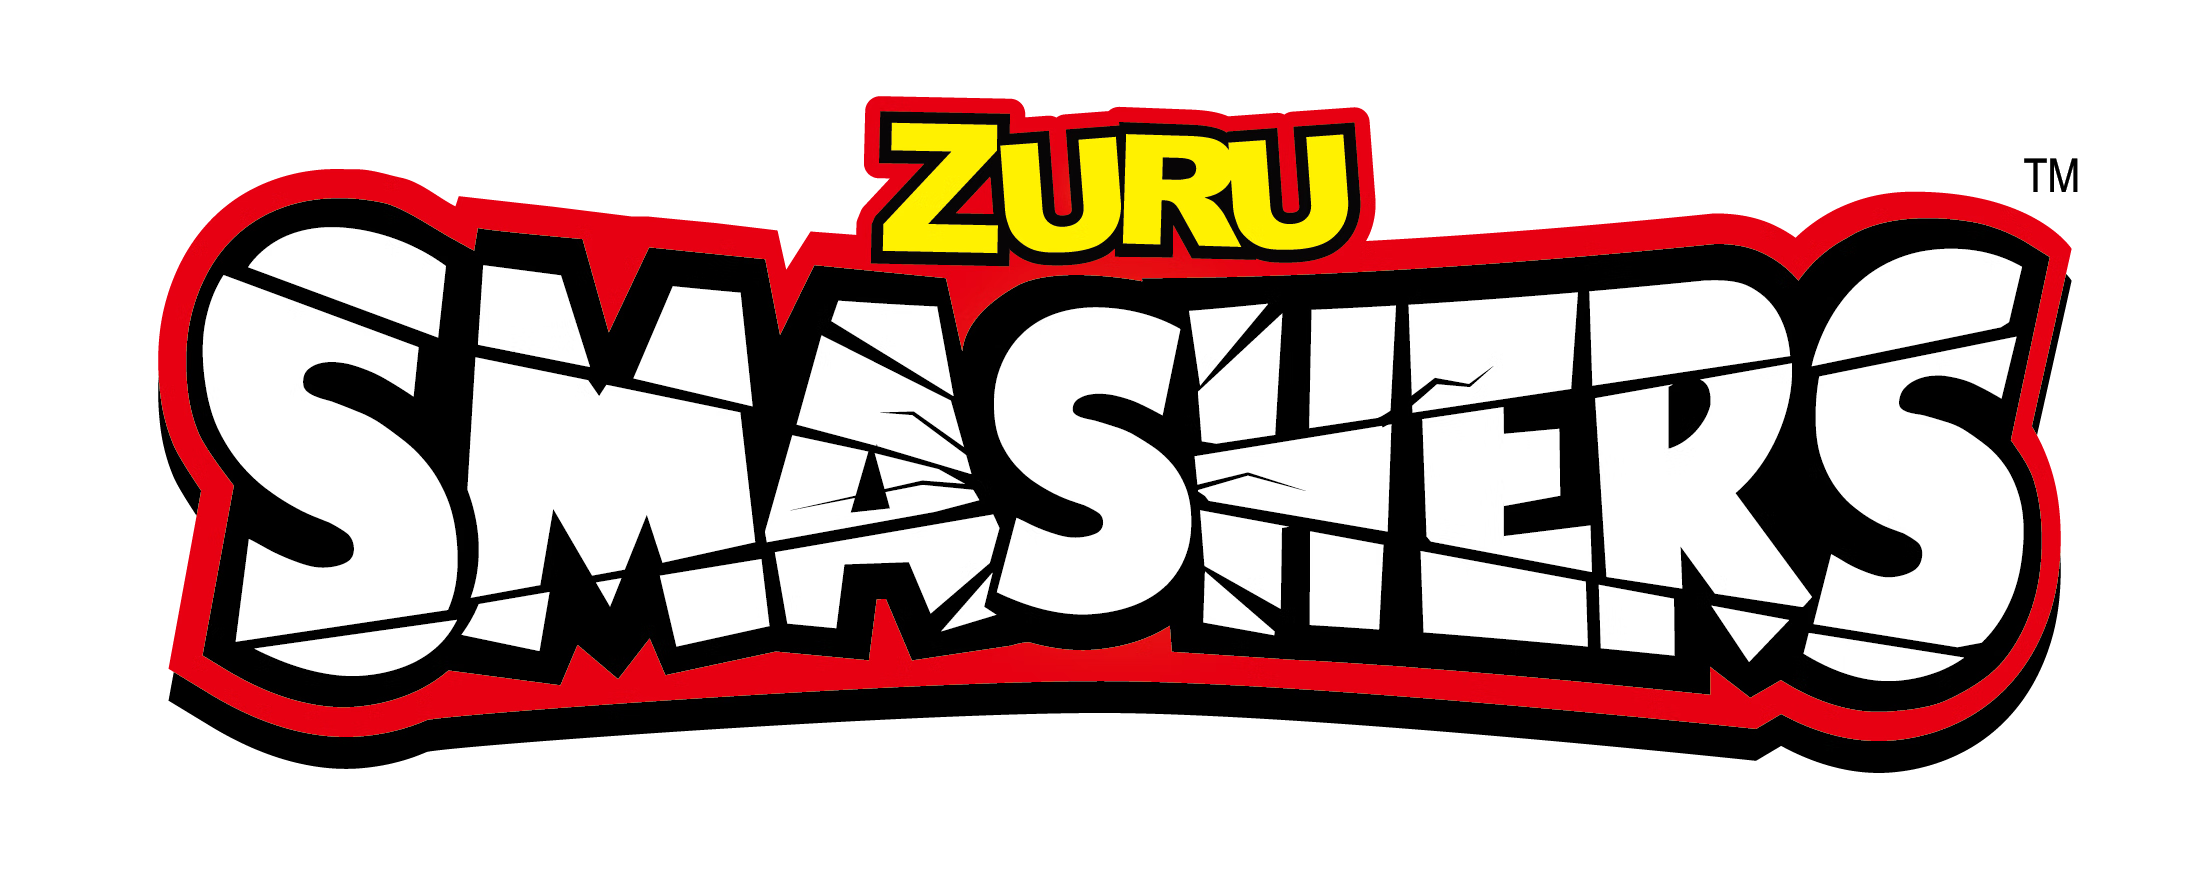 ZURU SMASHERS